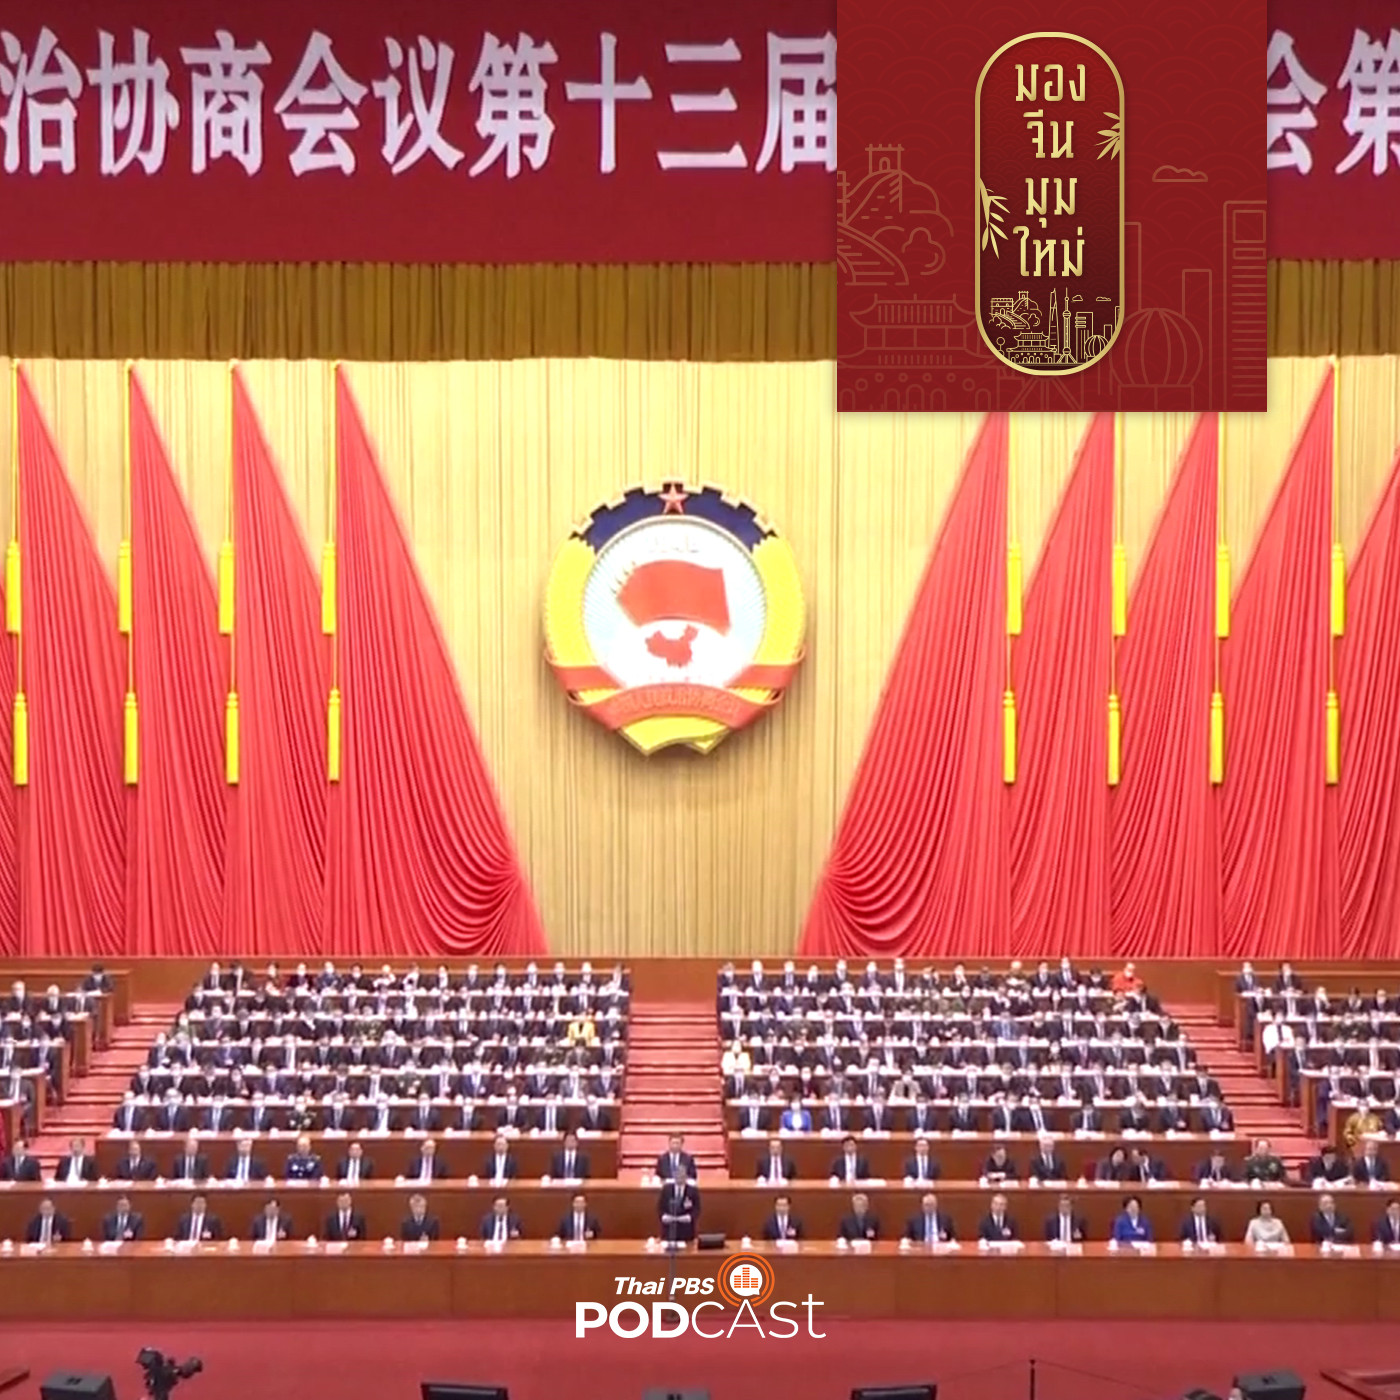 มองจีนมุมใหม่ EP. 50:   จับตาประชุมสองสภาจีน เร่งเครื่องเศรษฐกิจในประเทศ เน�